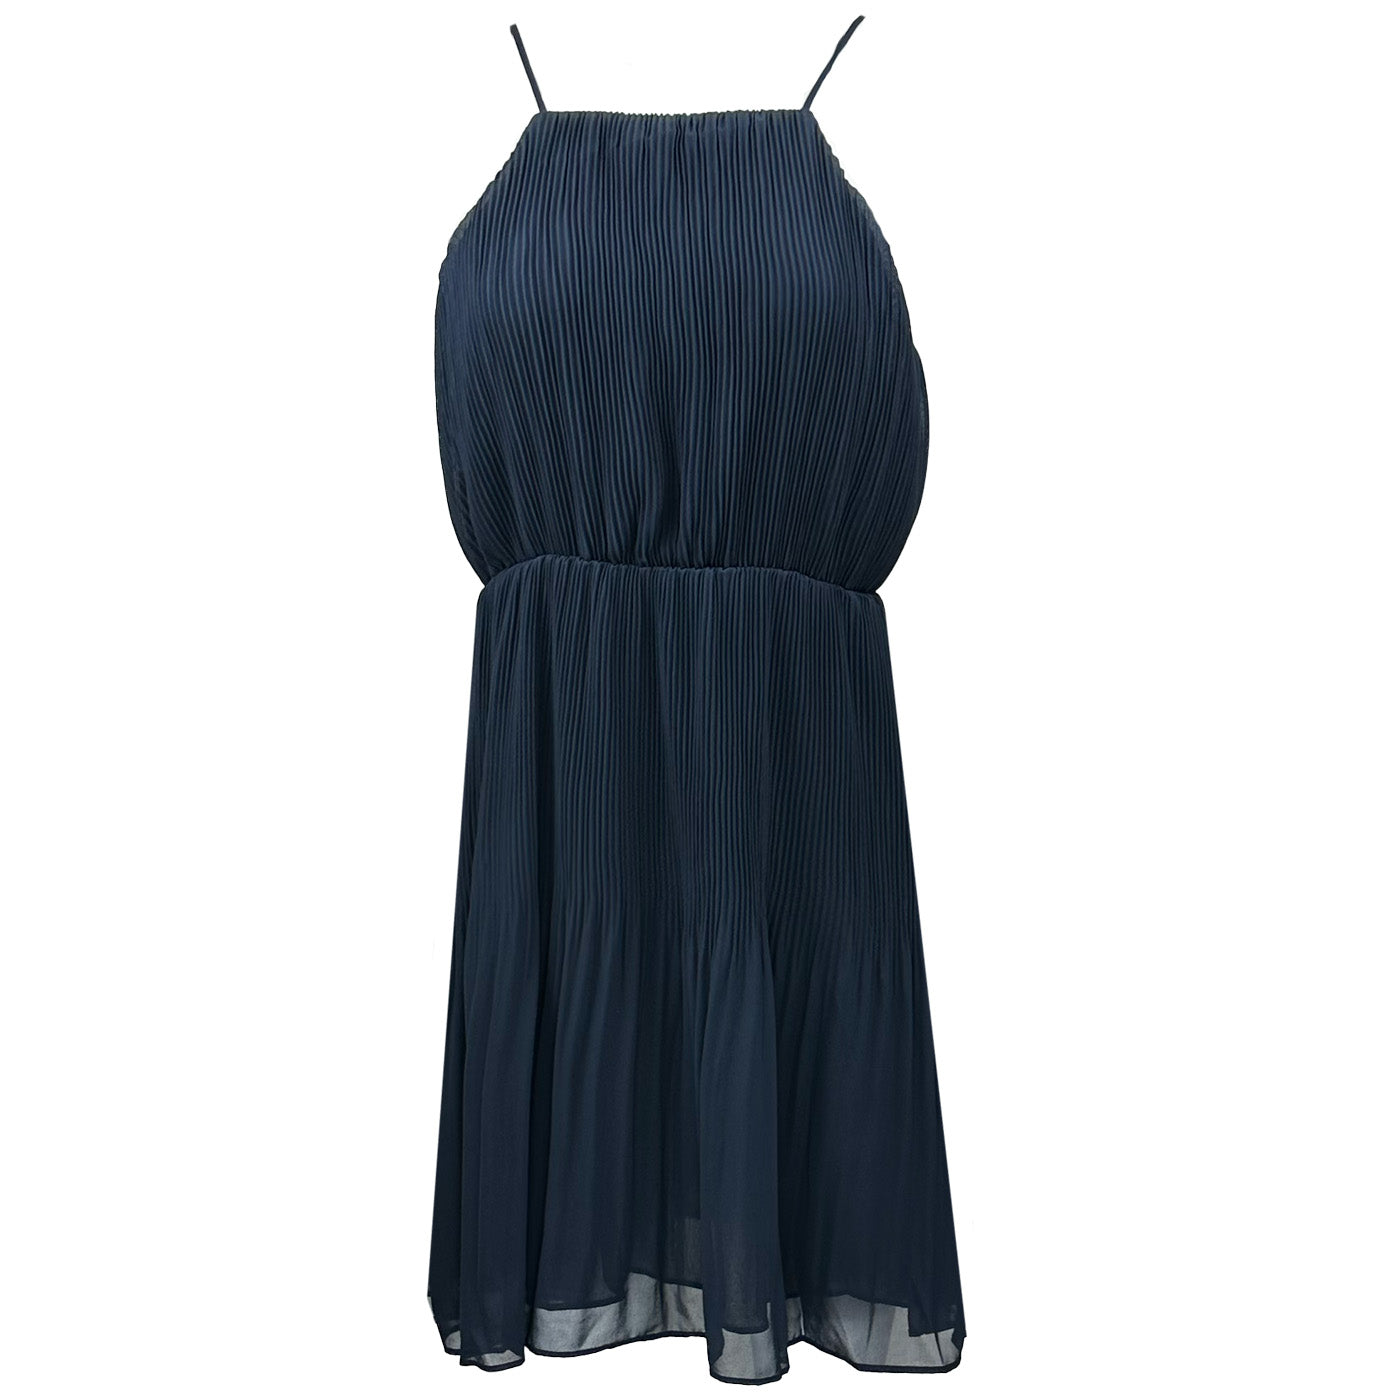 Дамска лятна рокля PEPE JEANS, в син цвят,  лека материя със средна дължина и подплата.